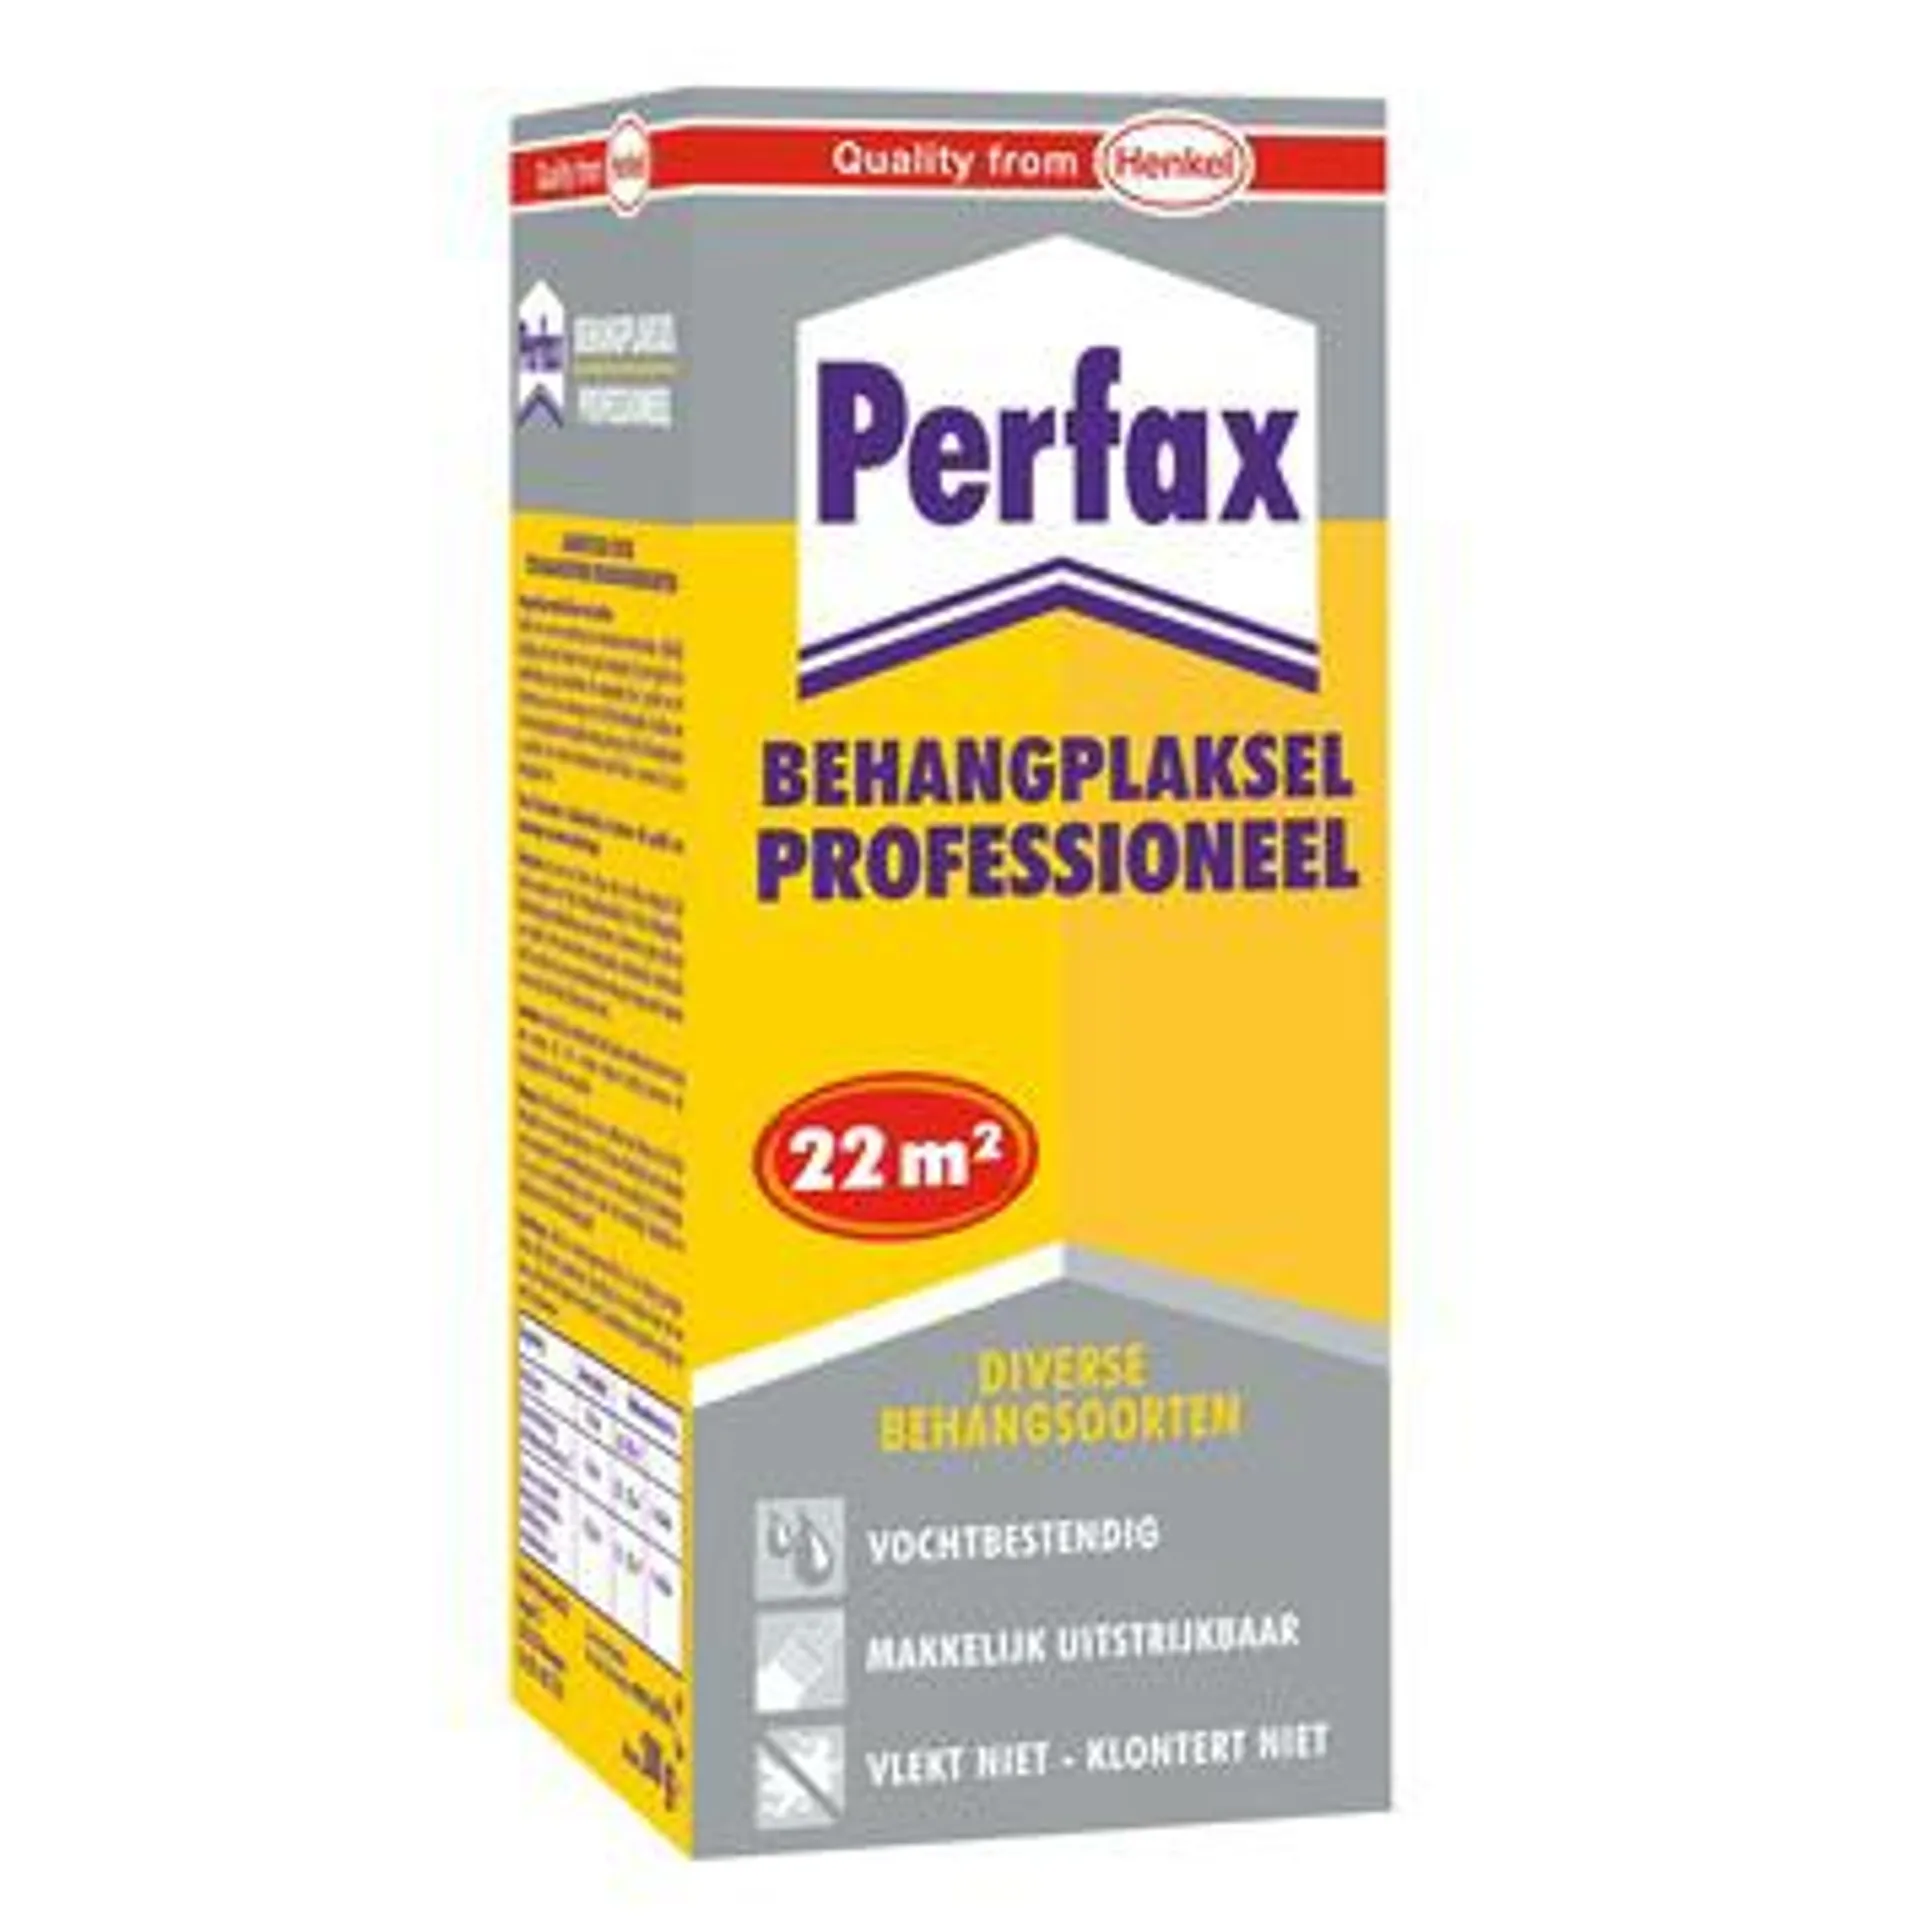 Perfax behangplaksel professioneel 200 g